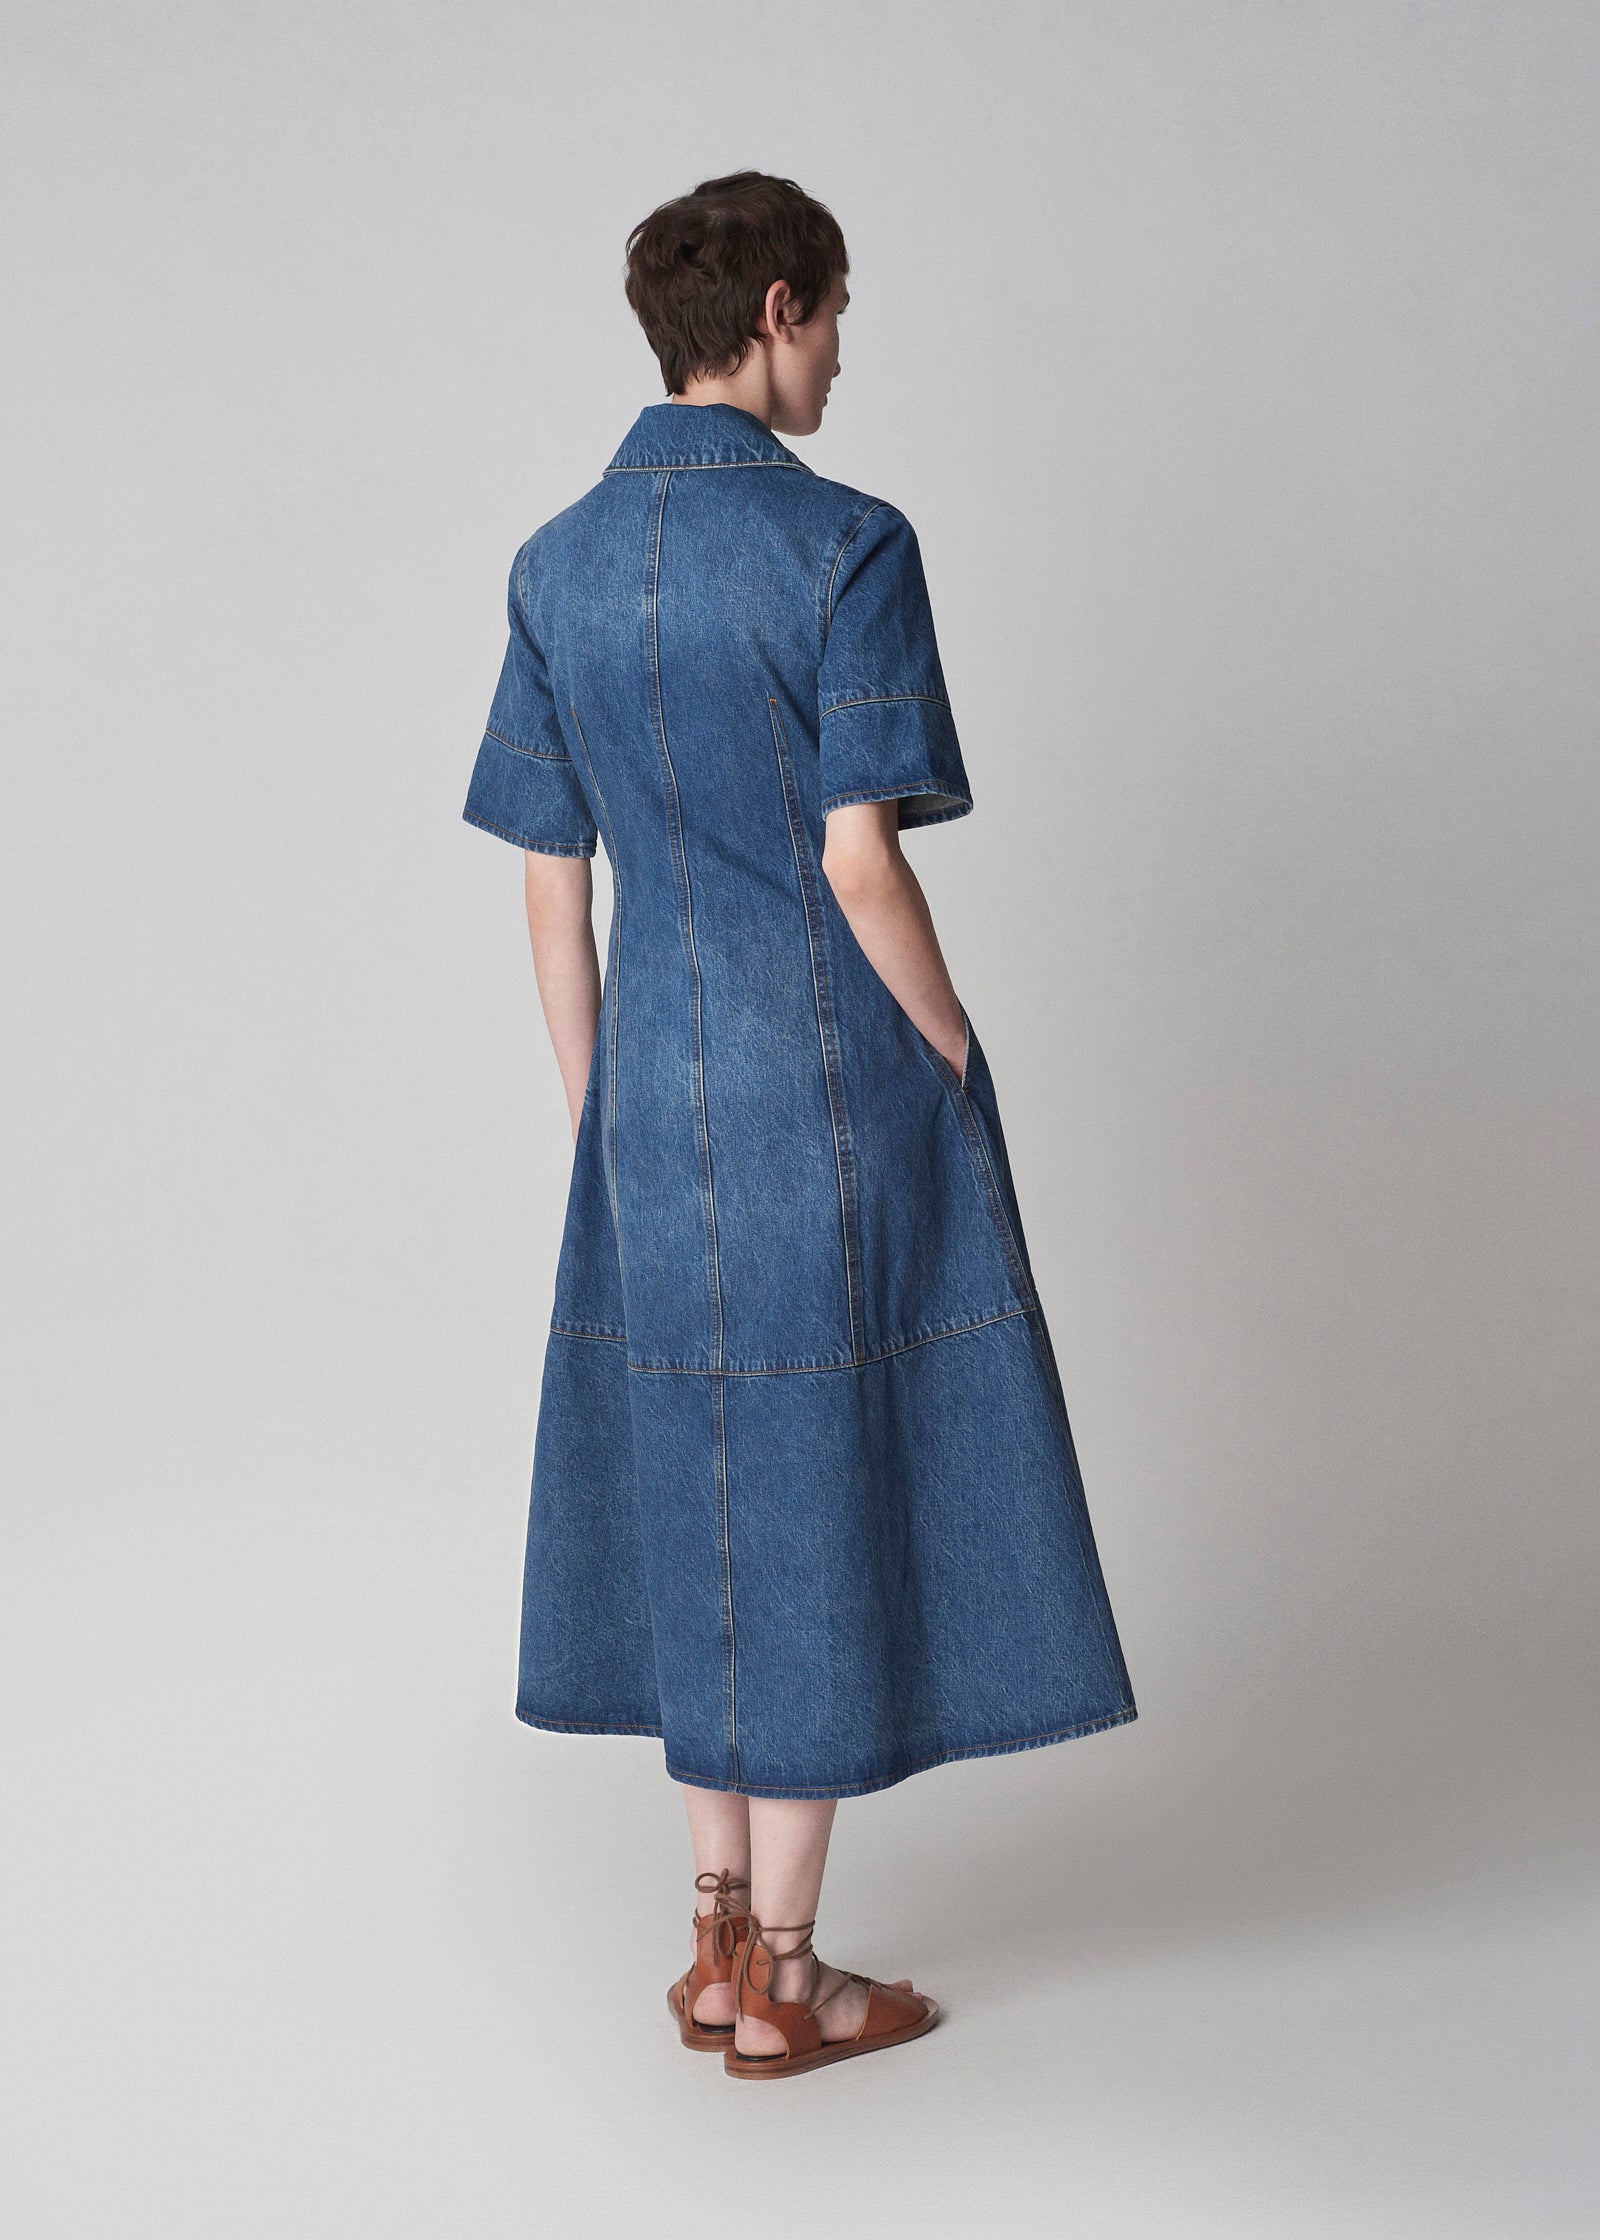 Ganni Light Tint Denim Midi Dress in Blue | Lyst